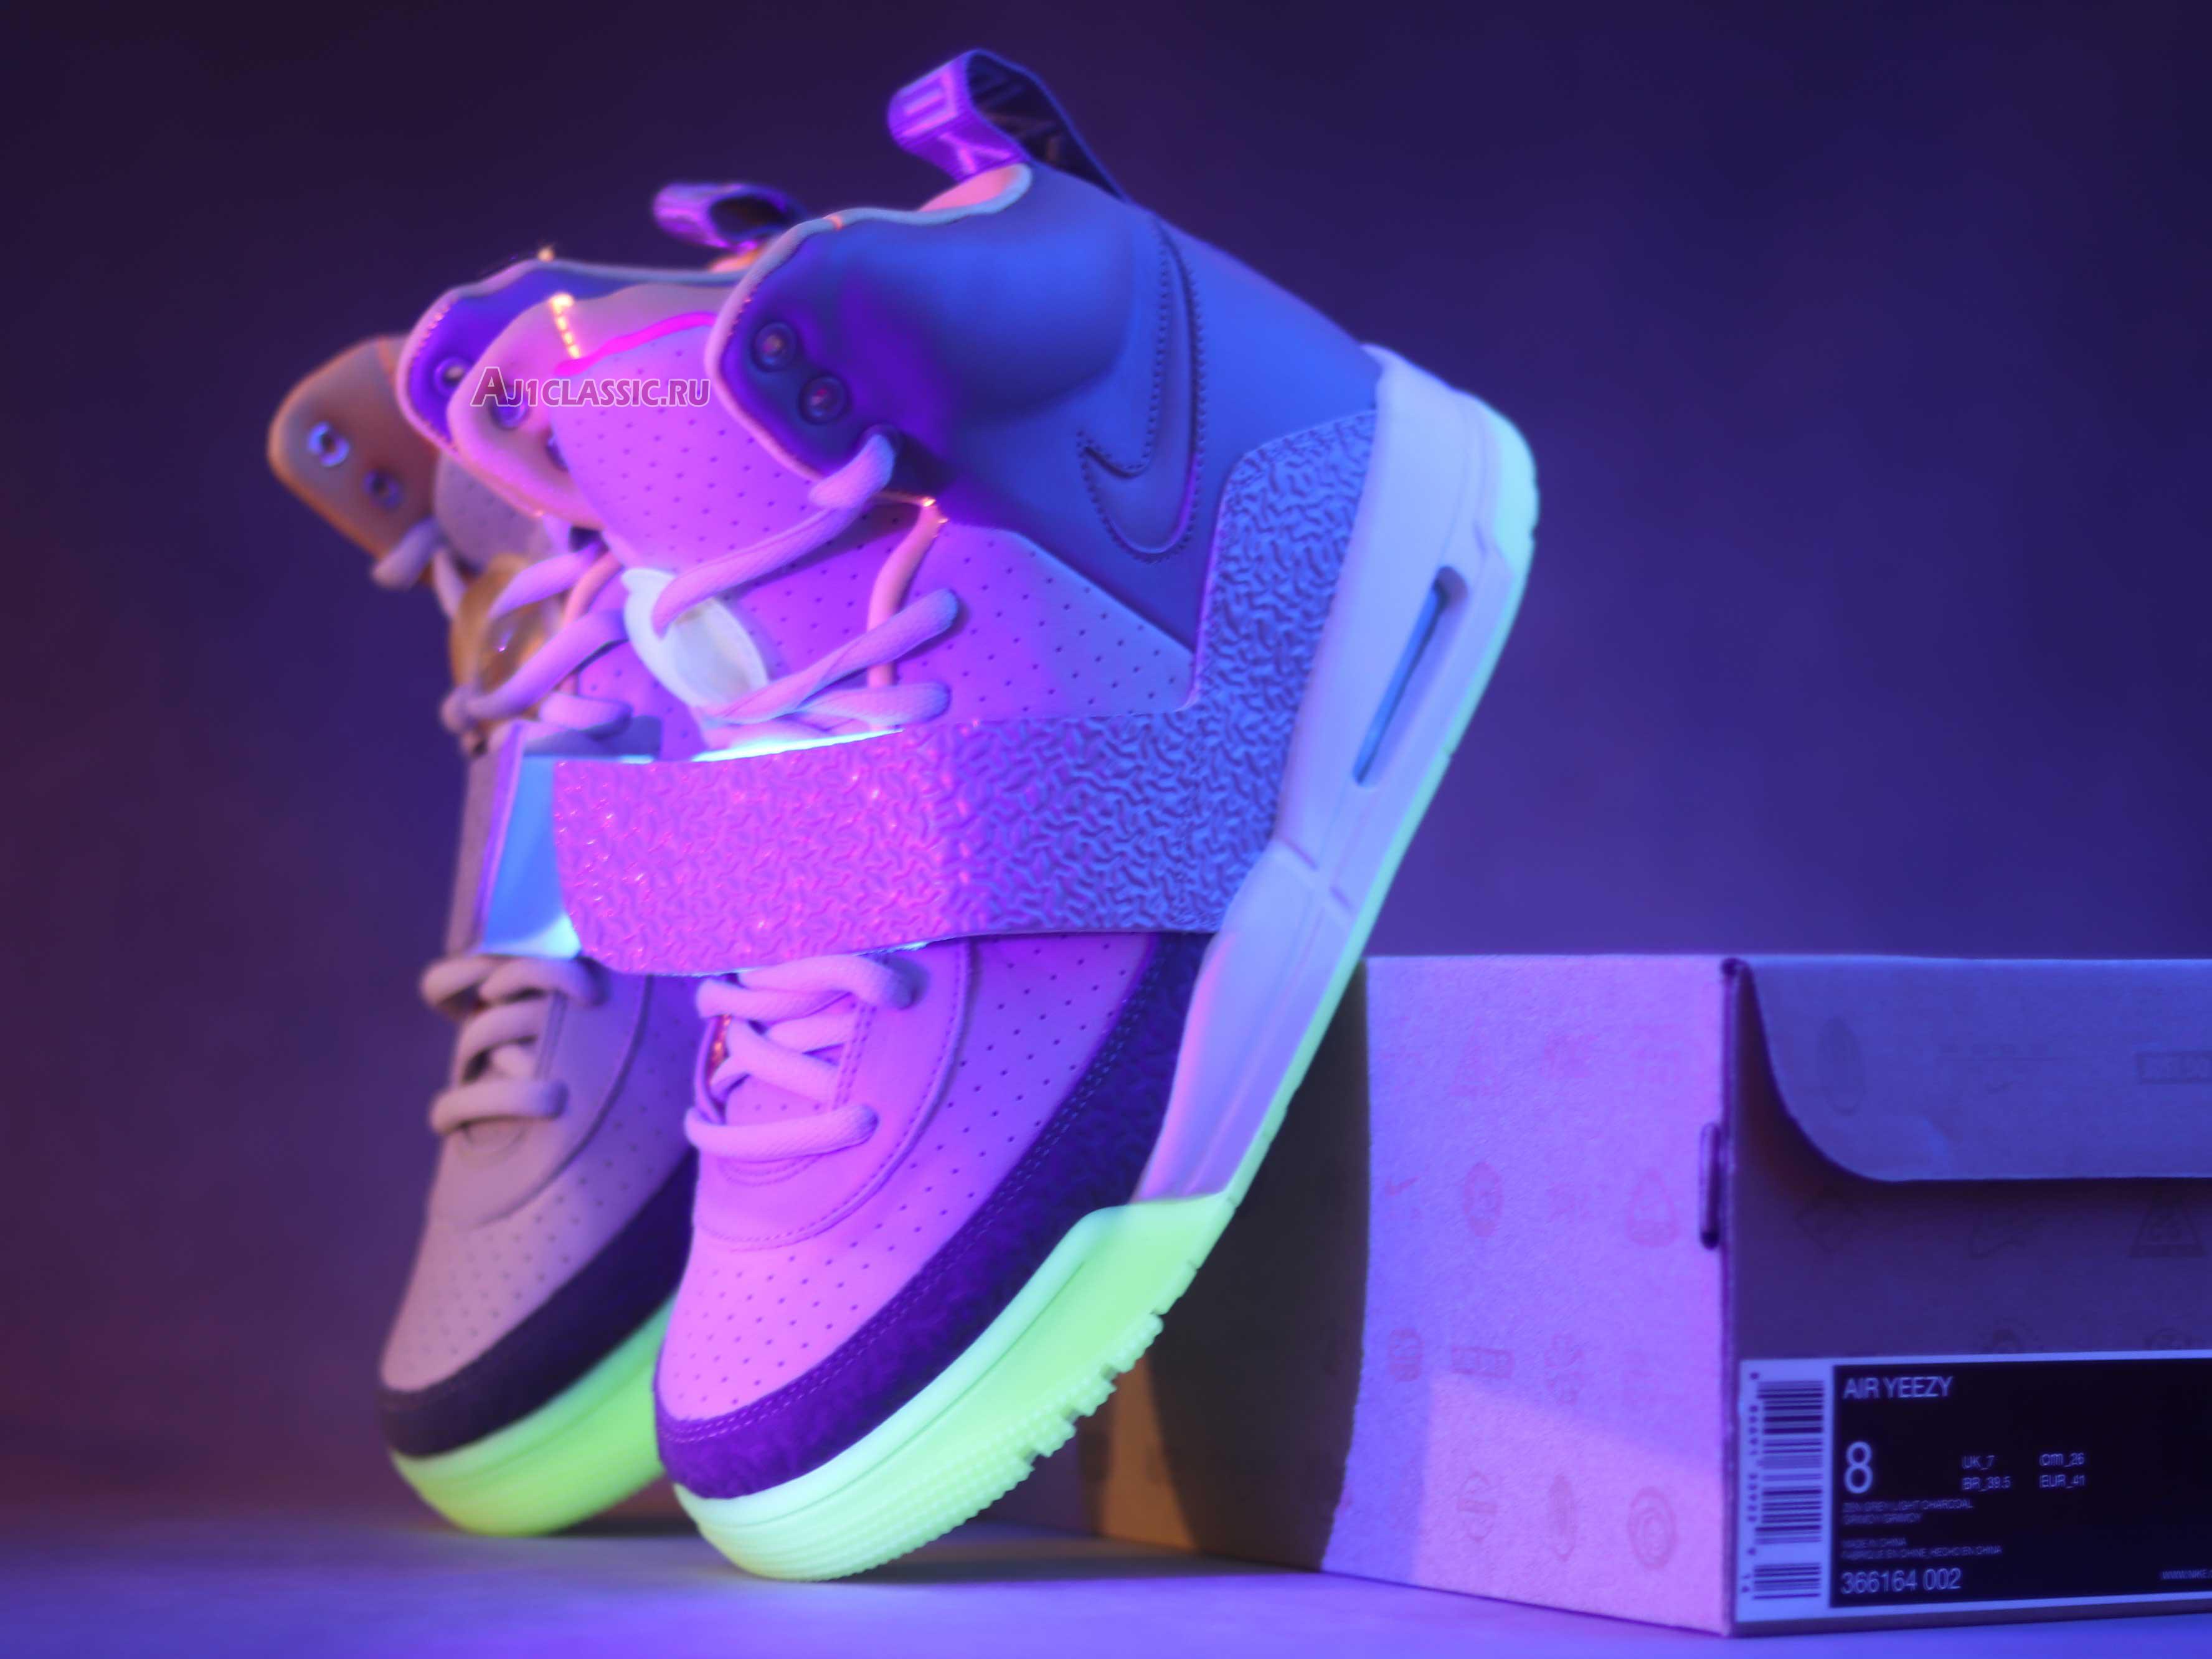 Nike Air Yeezy 1 Zen Grey 366164-002 Zen Grey/Light Charcoal Sneakers